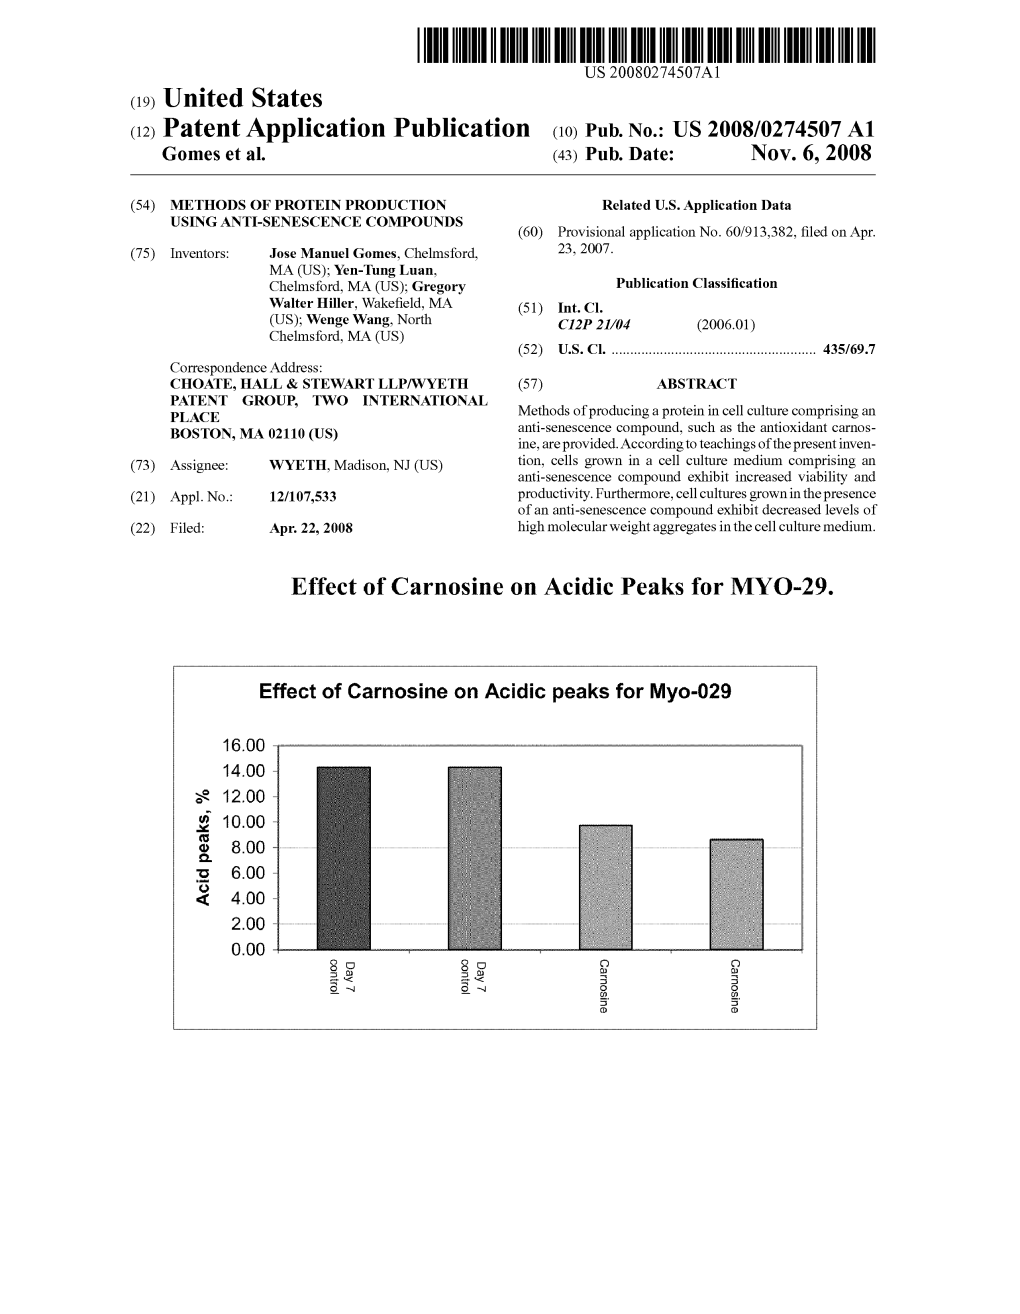 (12) Patent Application Publication (10) Pub. No.: US 2008/0274507 A1 Gomes Et Al